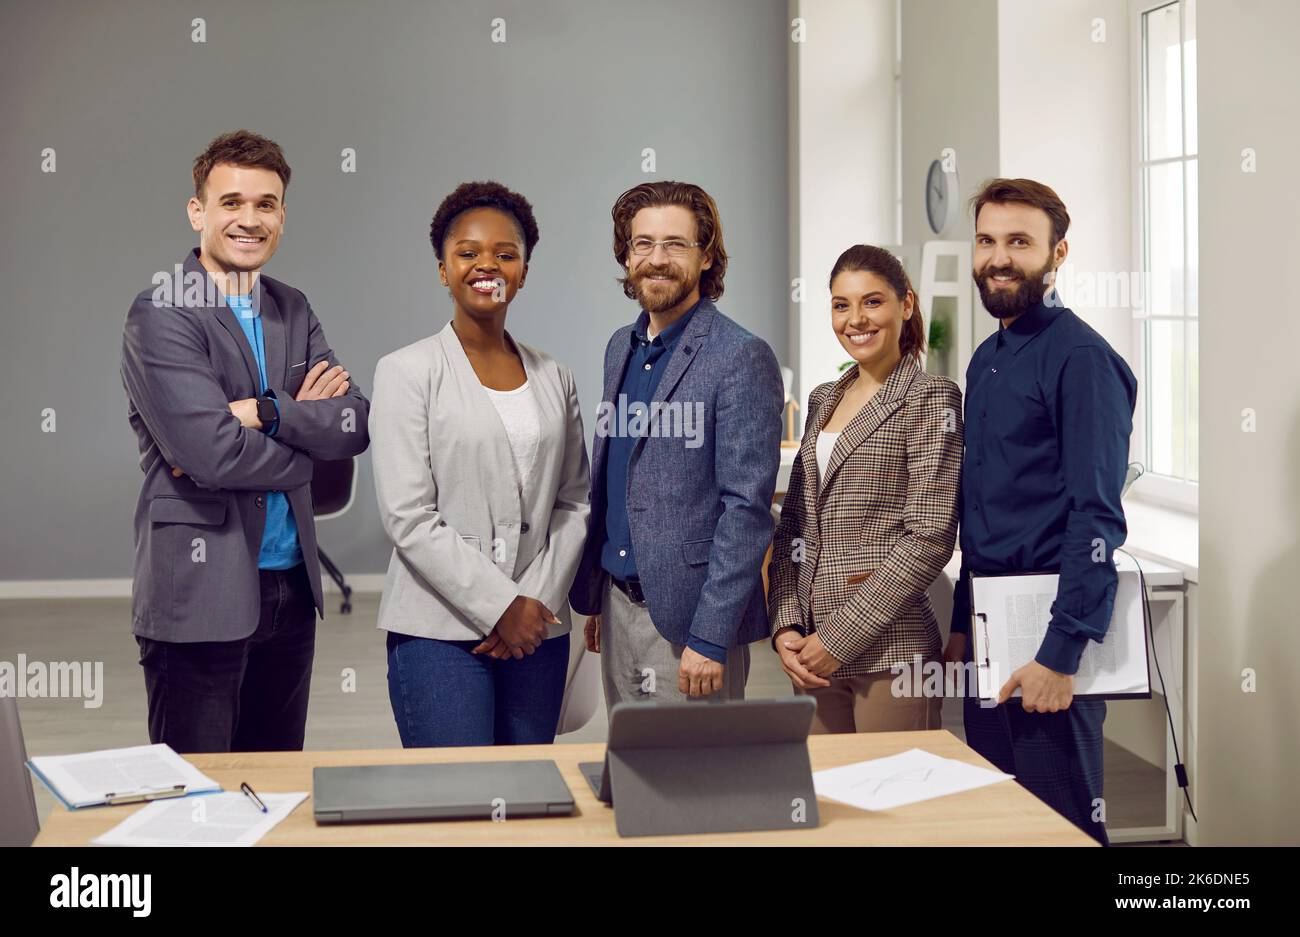 Multiethnische Personen im Vorstand von Unternehmen oder Unternehmen stehen mit einem Lächeln neben dem Tisch Stockfoto